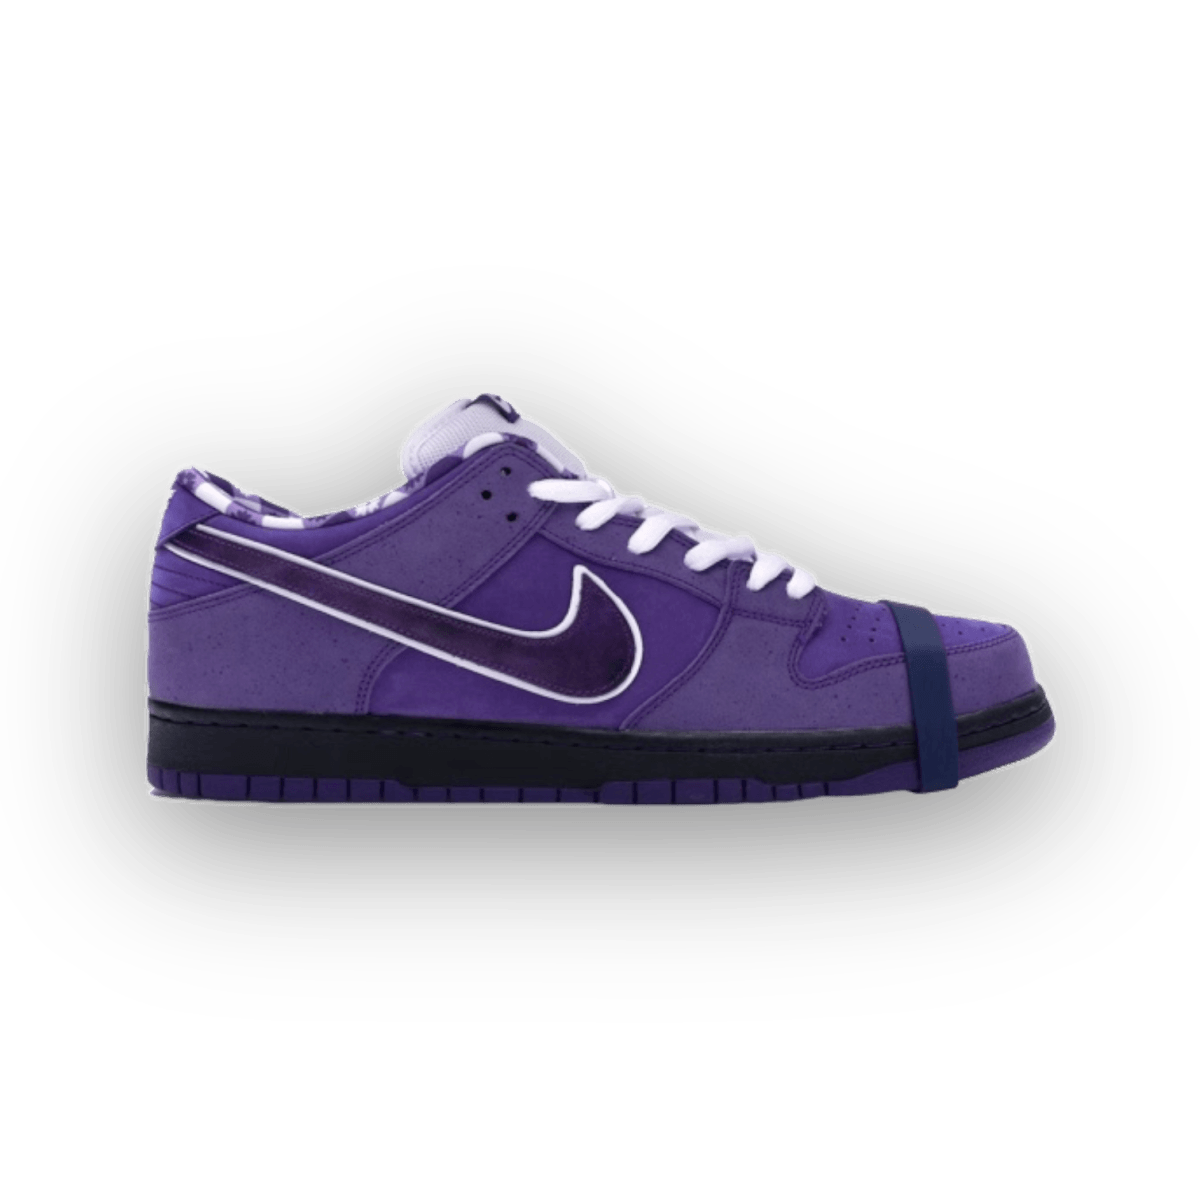 Dunk Low Concepts Purple Lobster - Low Sneaker - Jawns on Fire Sneakers & Streetwear